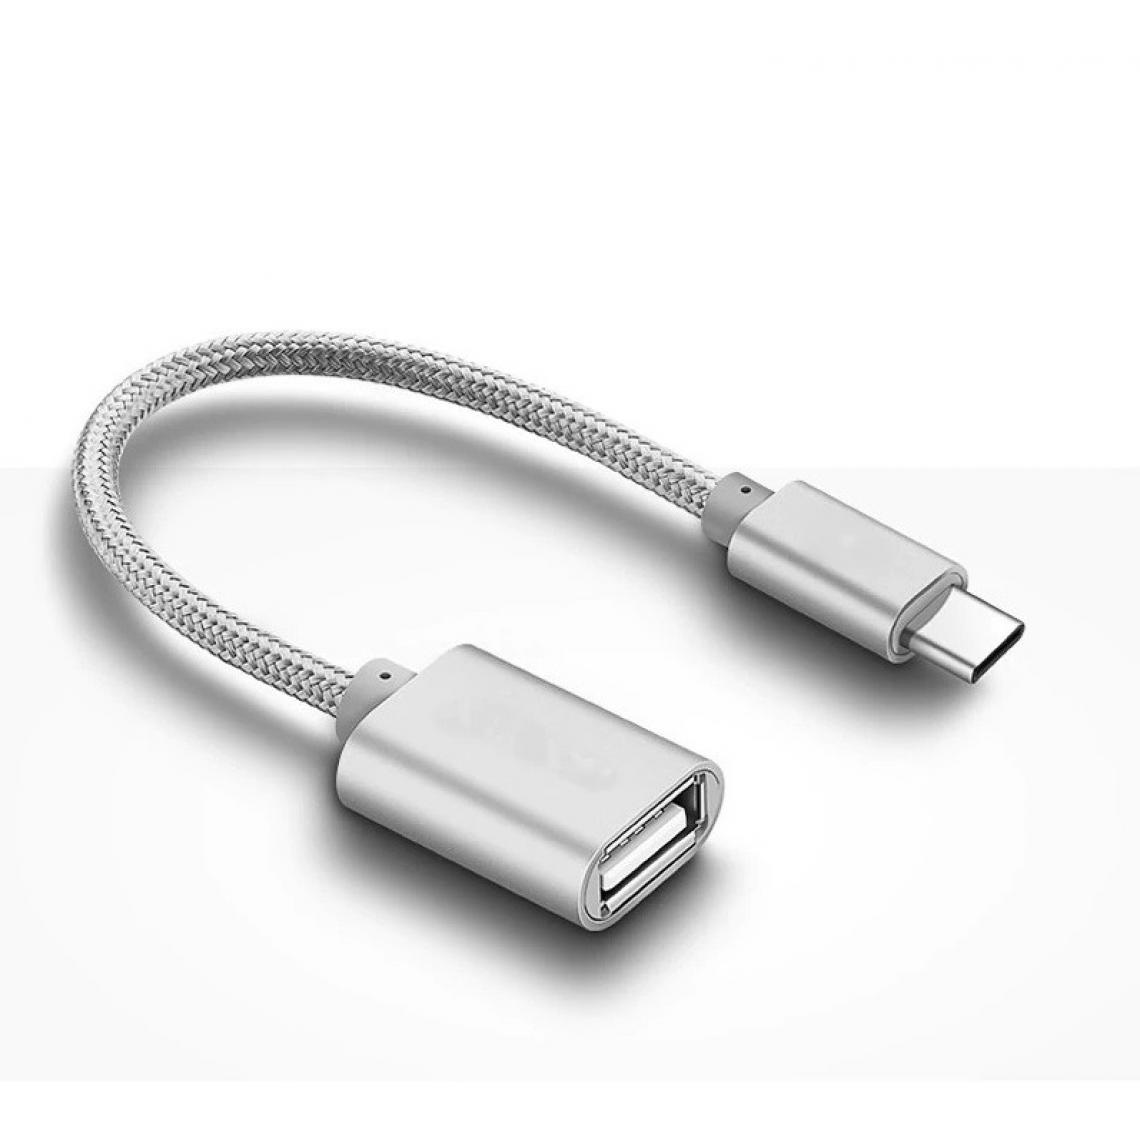 Shot - Adaptateur Type C/USB pour SAMSUNG Galaxy S9 + Smartphone & MAC USB-C Clef (ARGENT) - Autres accessoires smartphone